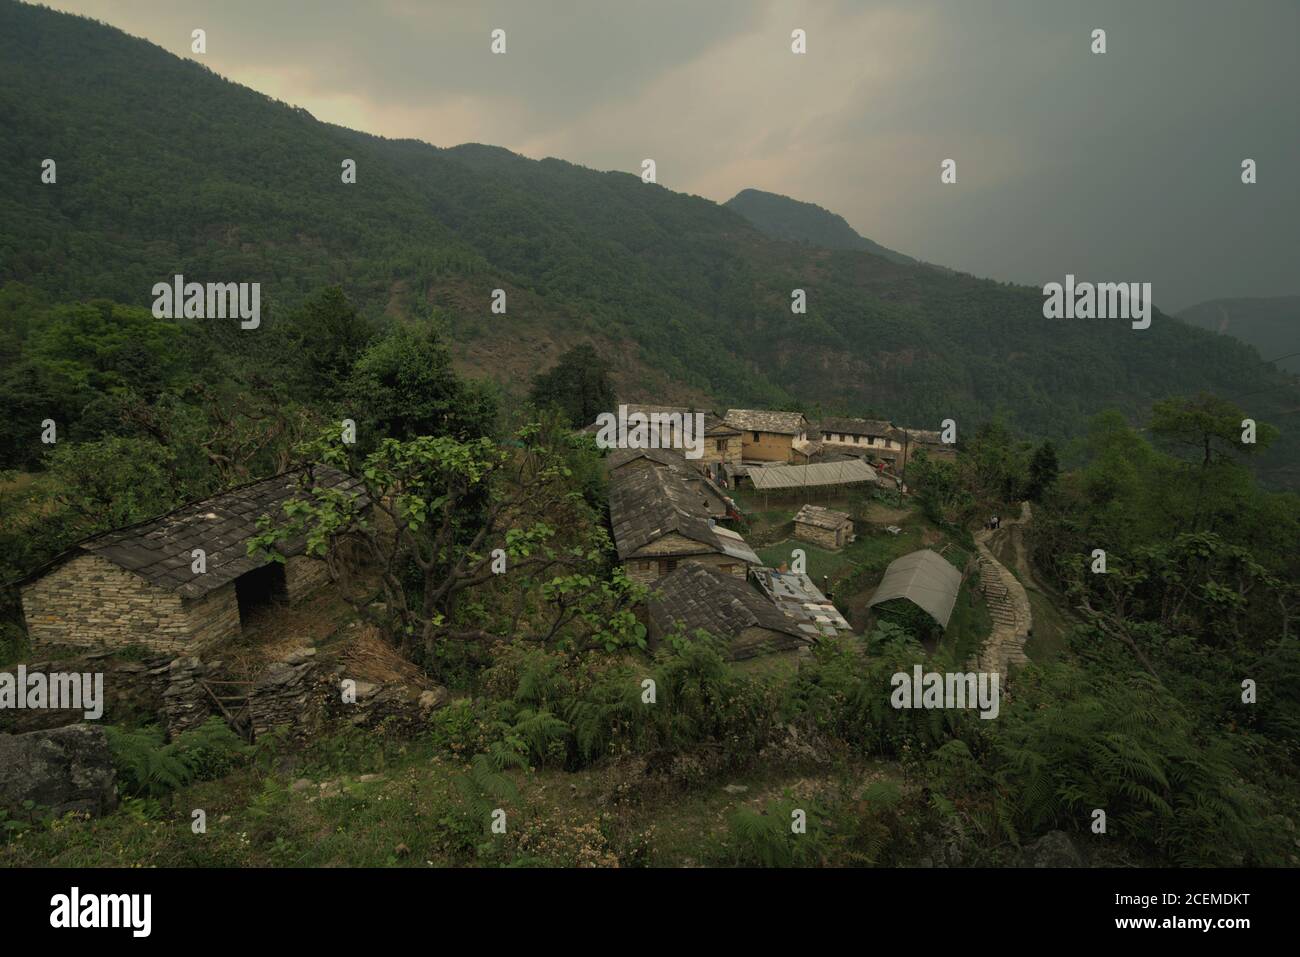 Blick auf die landwirtschaftliche, Ökotourismus Dorf Sidhane, Bhaudare Tamagi, am Hang des Panchase Berg in Kaski Bezirk, Gandaki Pradesh, Nepal. Stockfoto